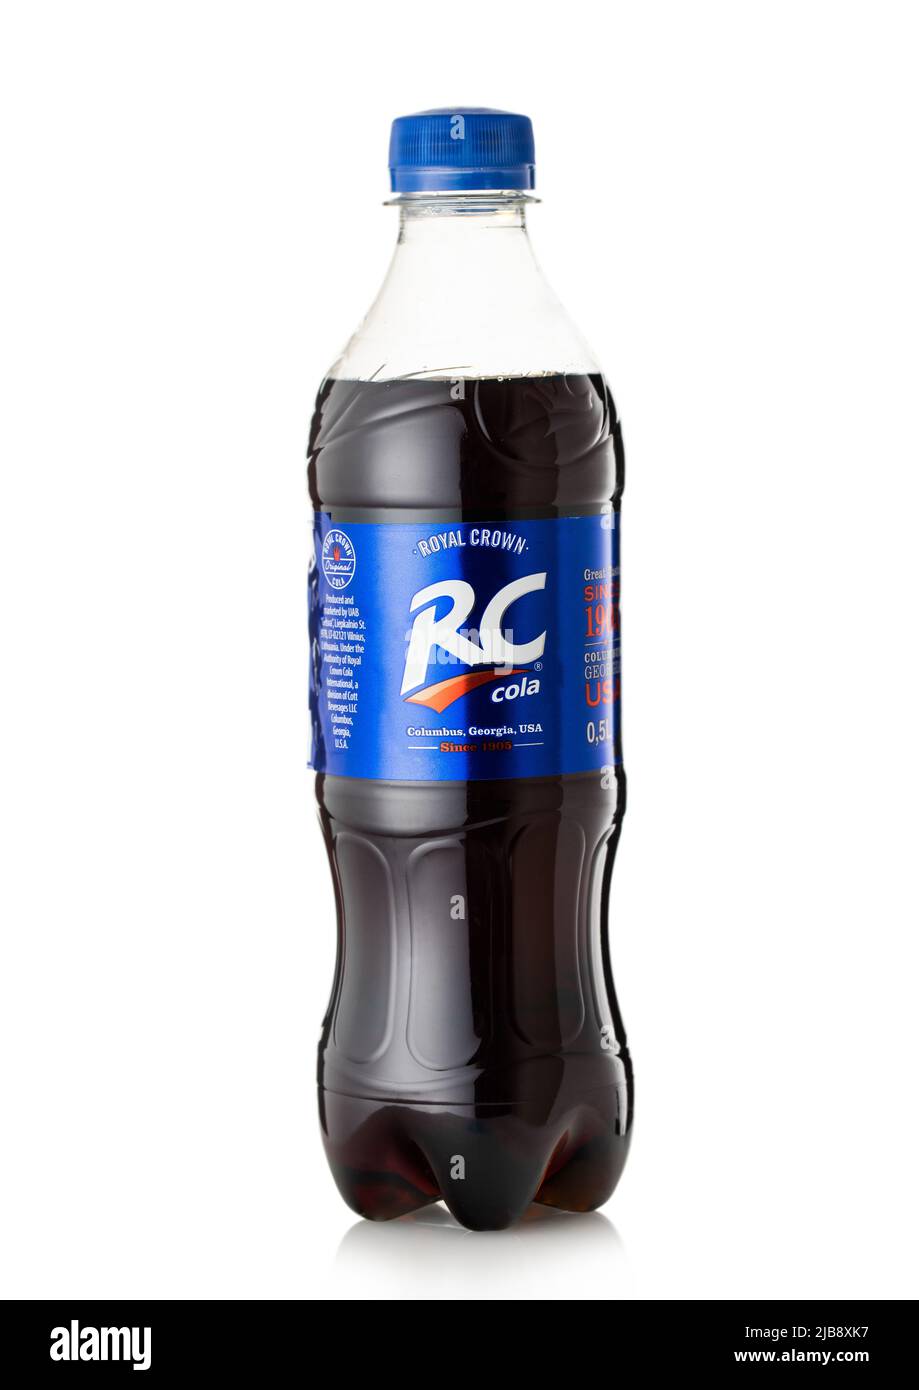 LONDRES, Reino Unido - 14 DE MAYO de 2022: Botella de refresco de cola RC sobre fondo blanco. Foto de stock